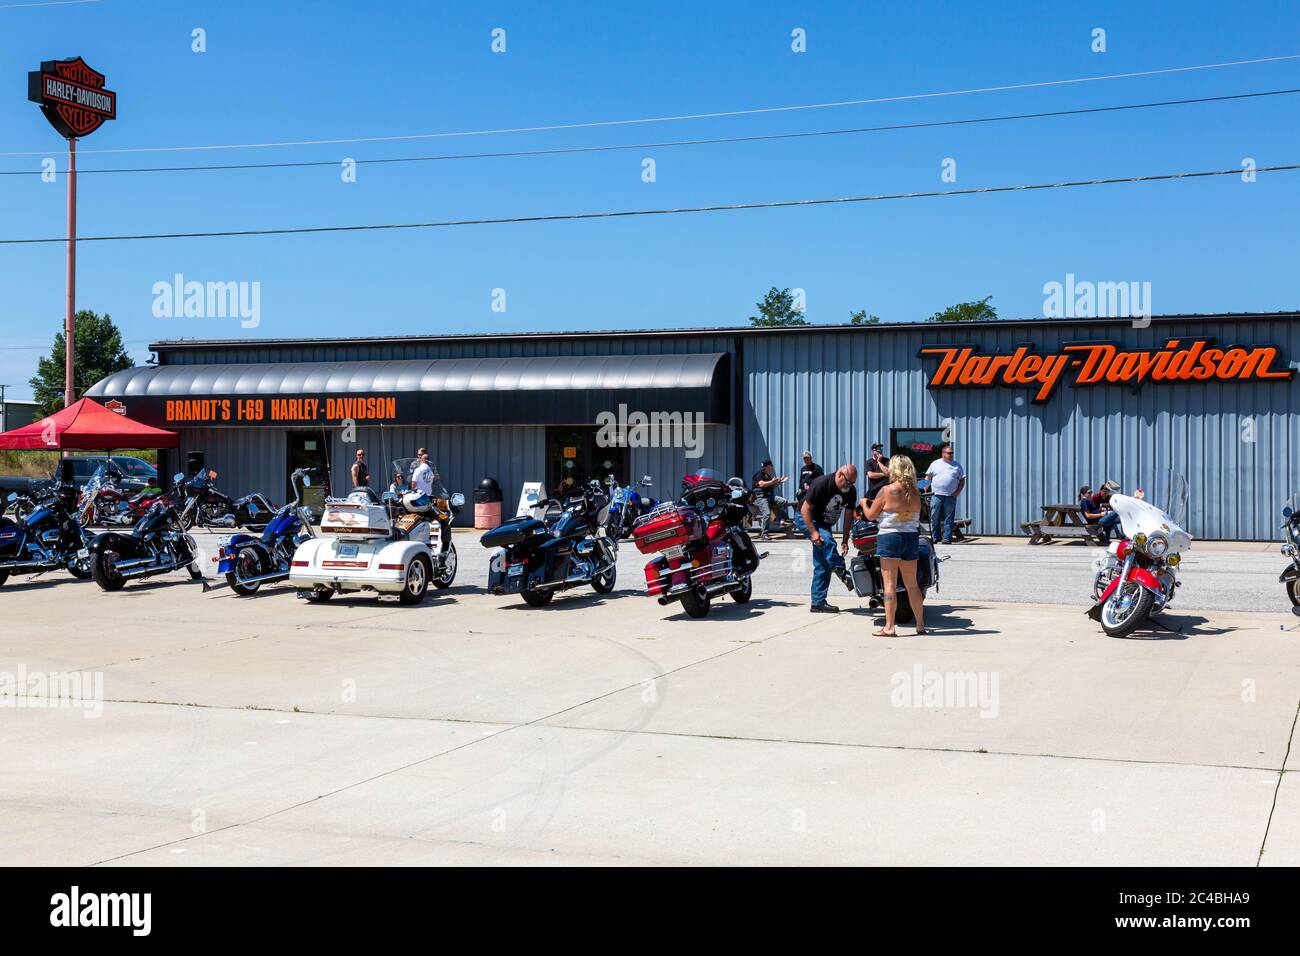 Les motards se rassemblent pour la fête « Too Broy for Sturgis » à la concession de motos I-69 Harley Davidson de Brandt à Marion, Indiana, États-Unis. Banque D'Images